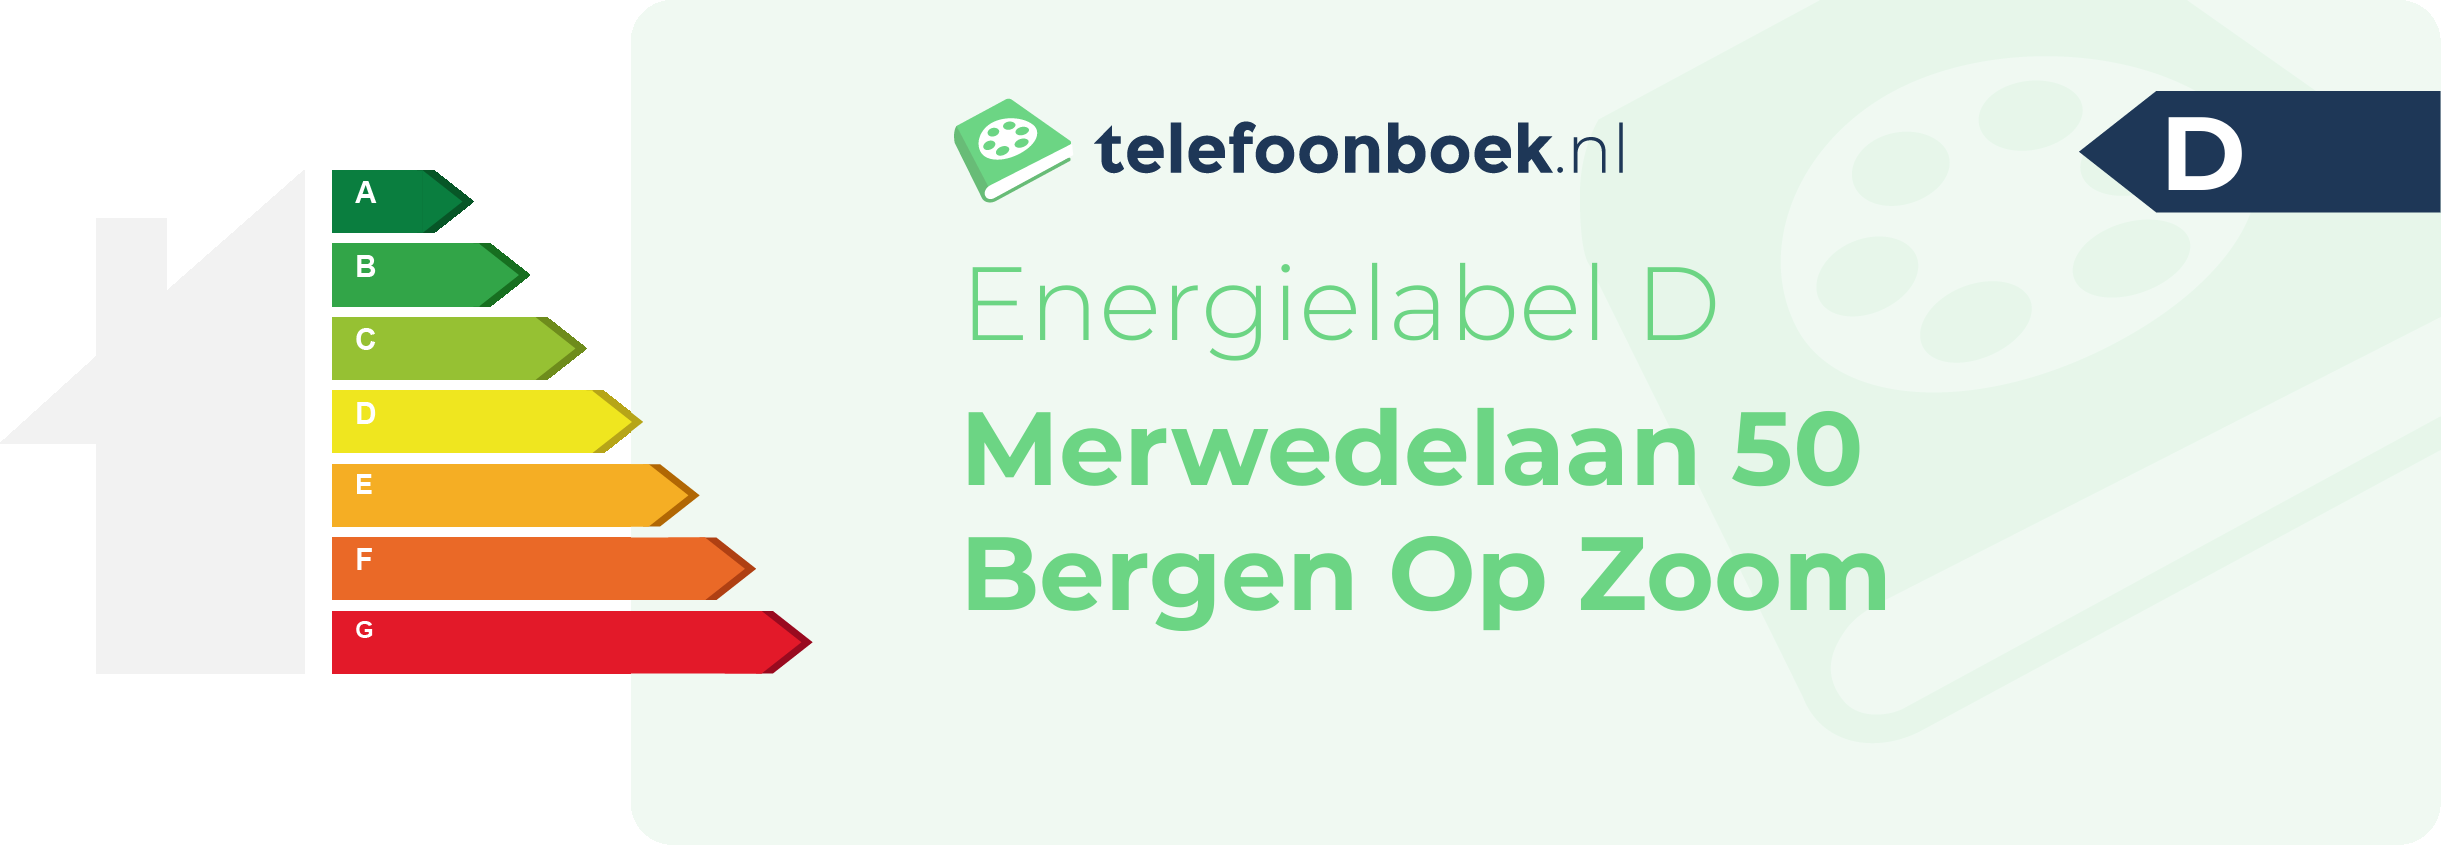 Energielabel Merwedelaan 50 Bergen Op Zoom